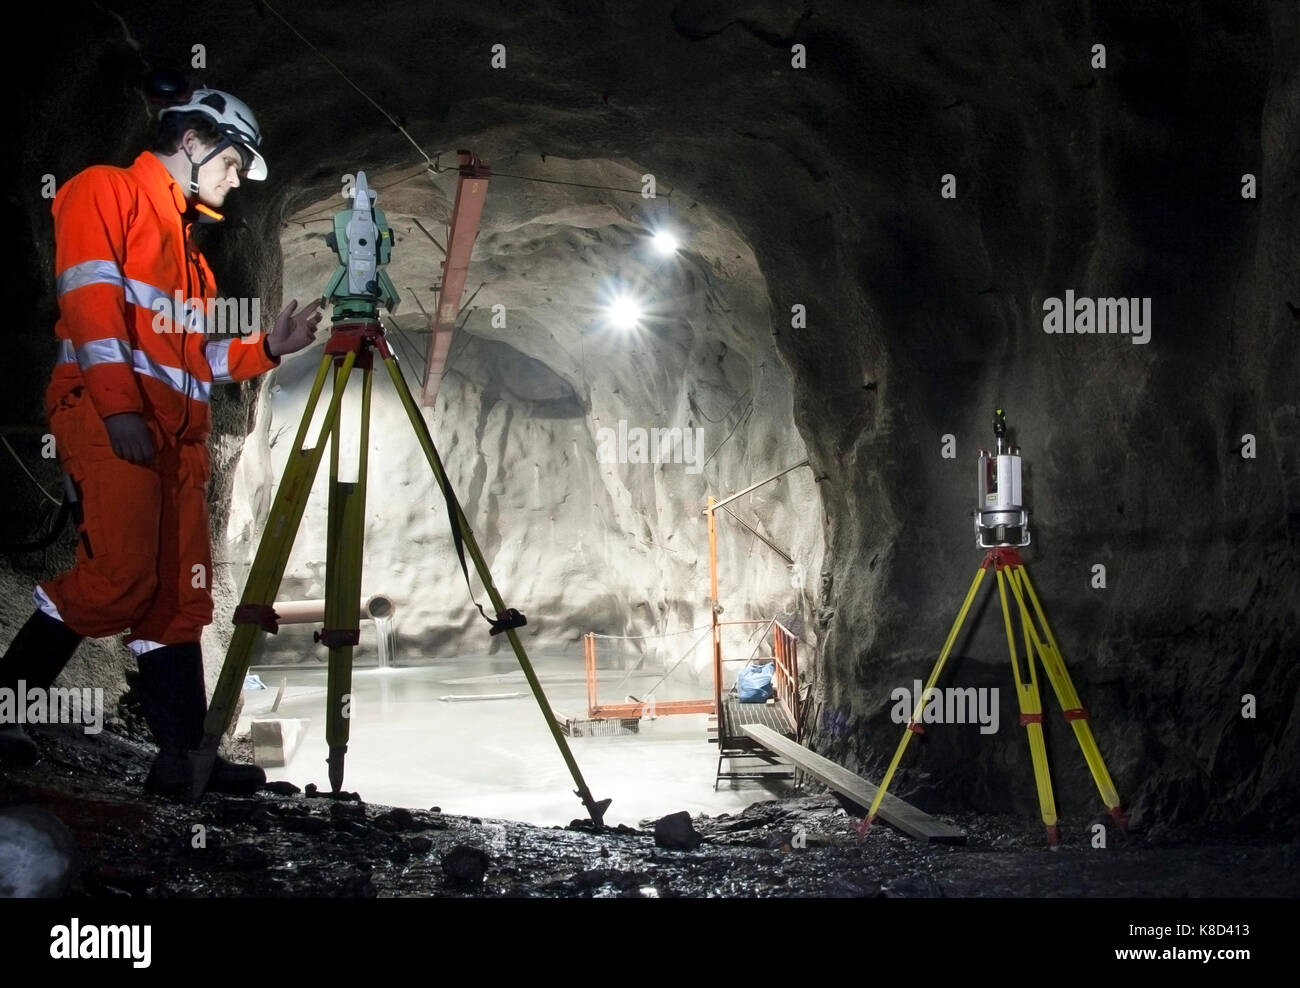 La Svezia, Kiruna miniera di ferro - 26 febbraio 2012: un agrimensore durante il suo lavoro con rilievi e la scansione utilizzando teodolite o stazione totale. Foto Stock